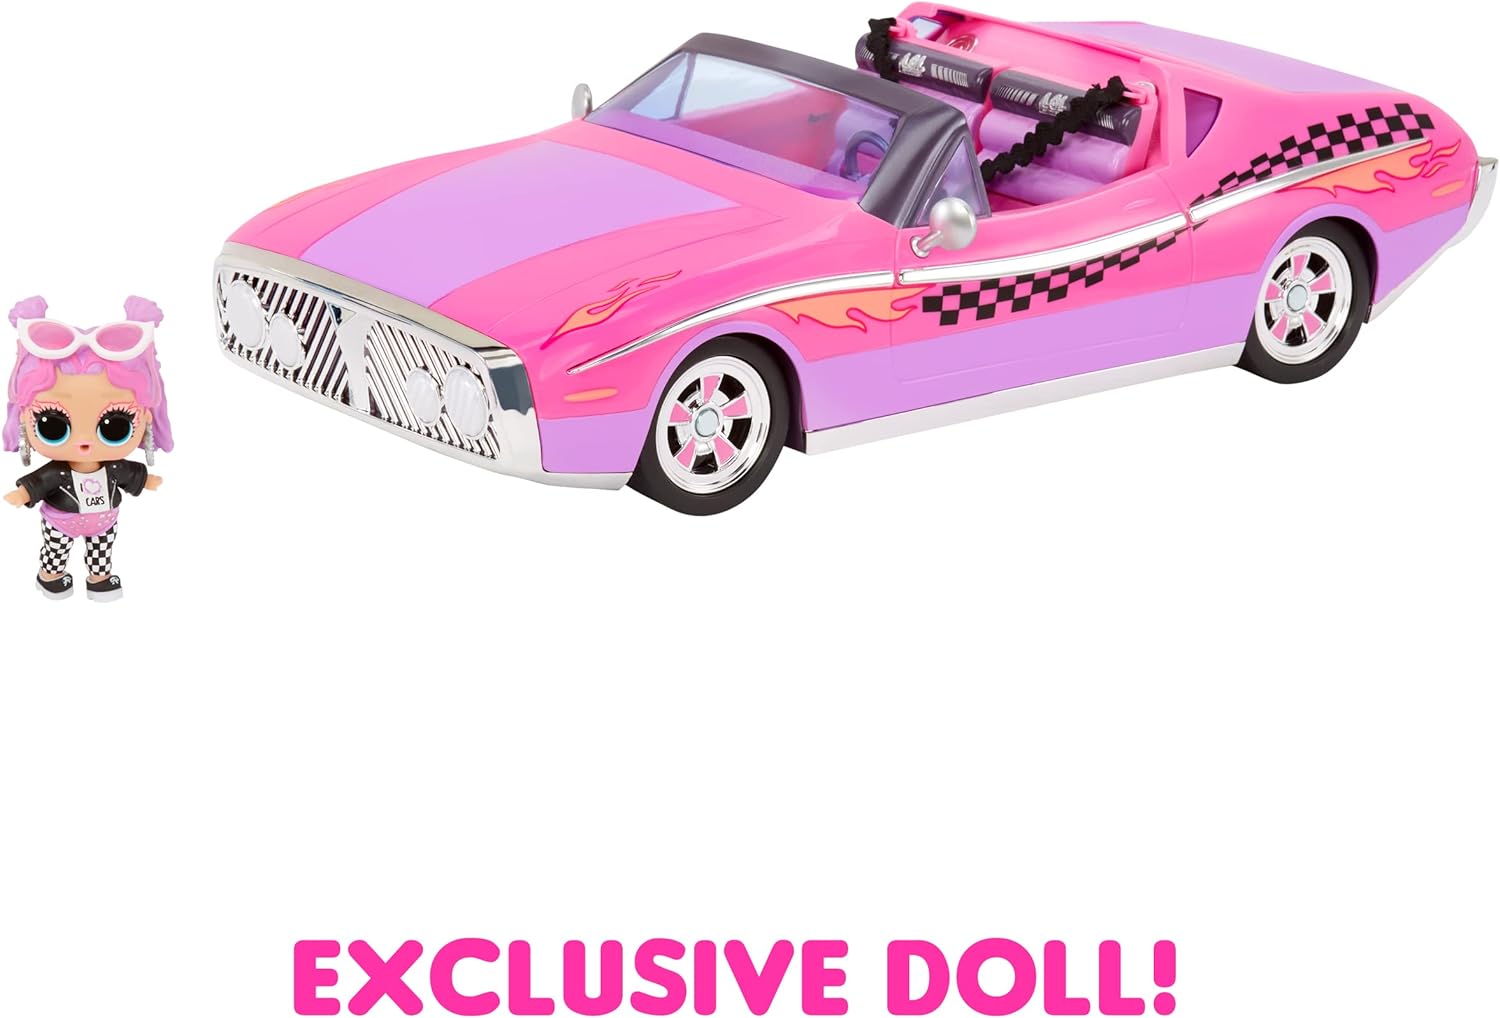 مضحك جداً. مفاجأة! LOL Surprise City Cruiser، سيارة رياضية باللونين الوردي والأرجواني مع ميزات رائعة ودمية حصرية